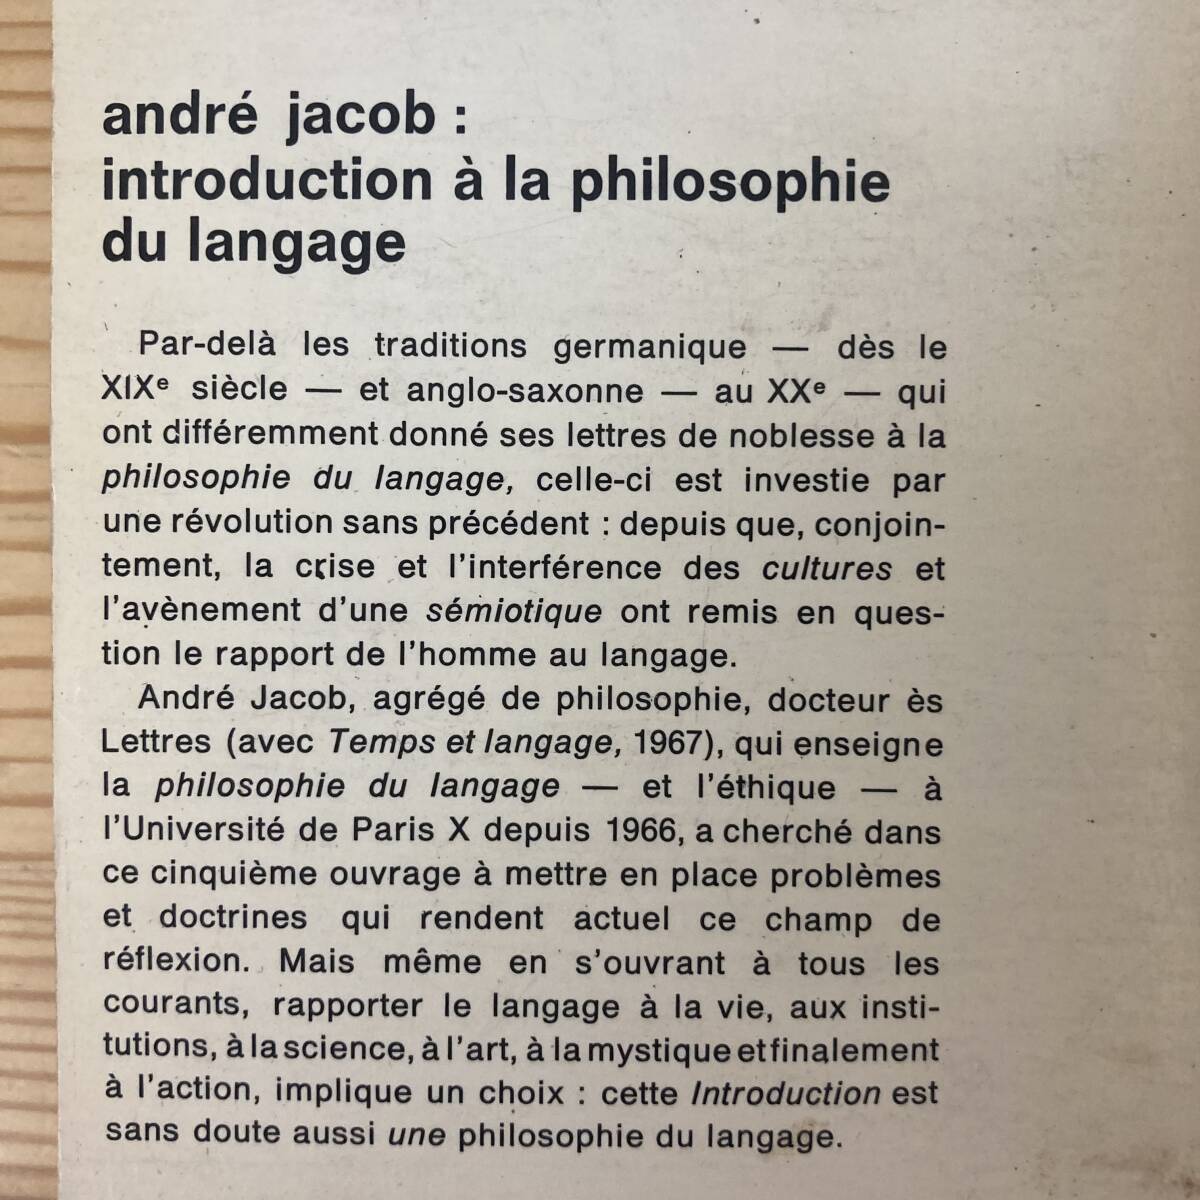 【仏語洋書】Introduction a la philosophie du langage / Andre Jacob（著）【言語哲学】_画像2